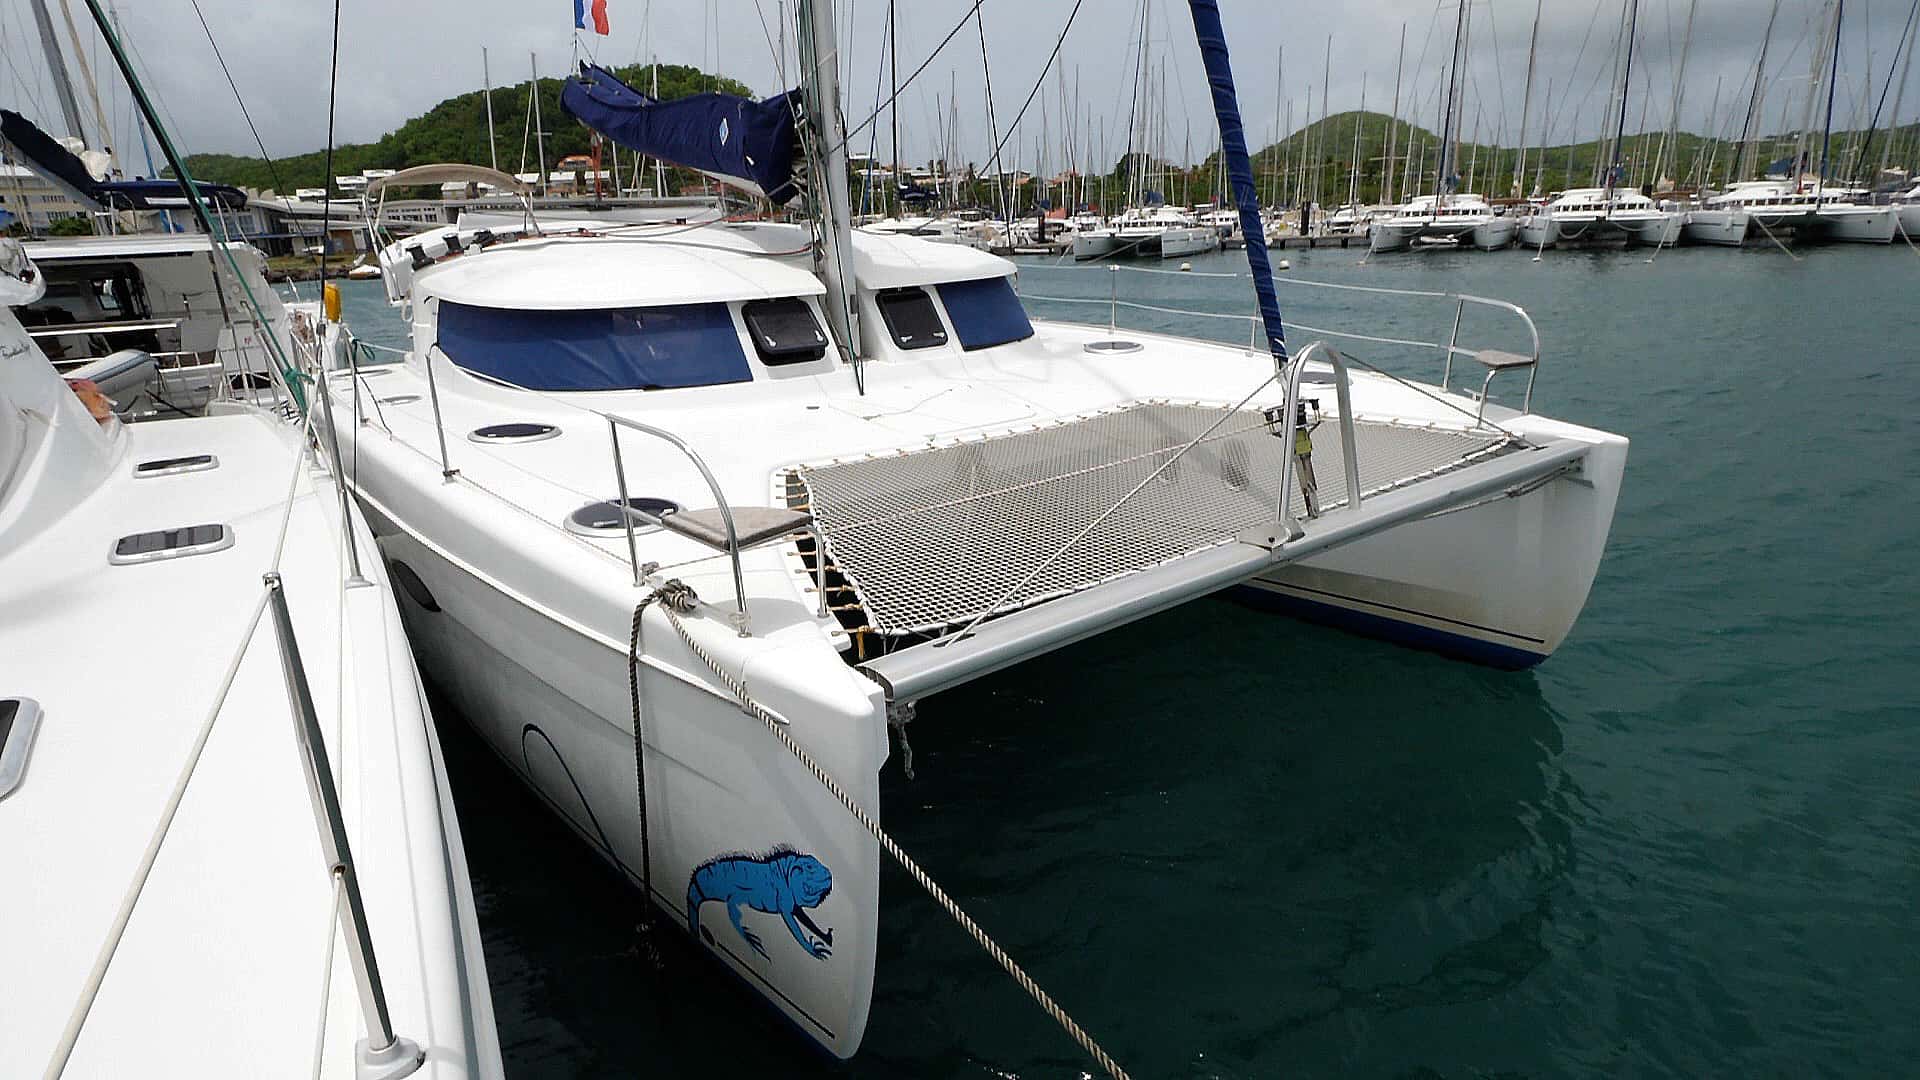 Location catamaran croisière grenadines - Croisière catamaran grenadines - Location bateau martinique - Lipari 41